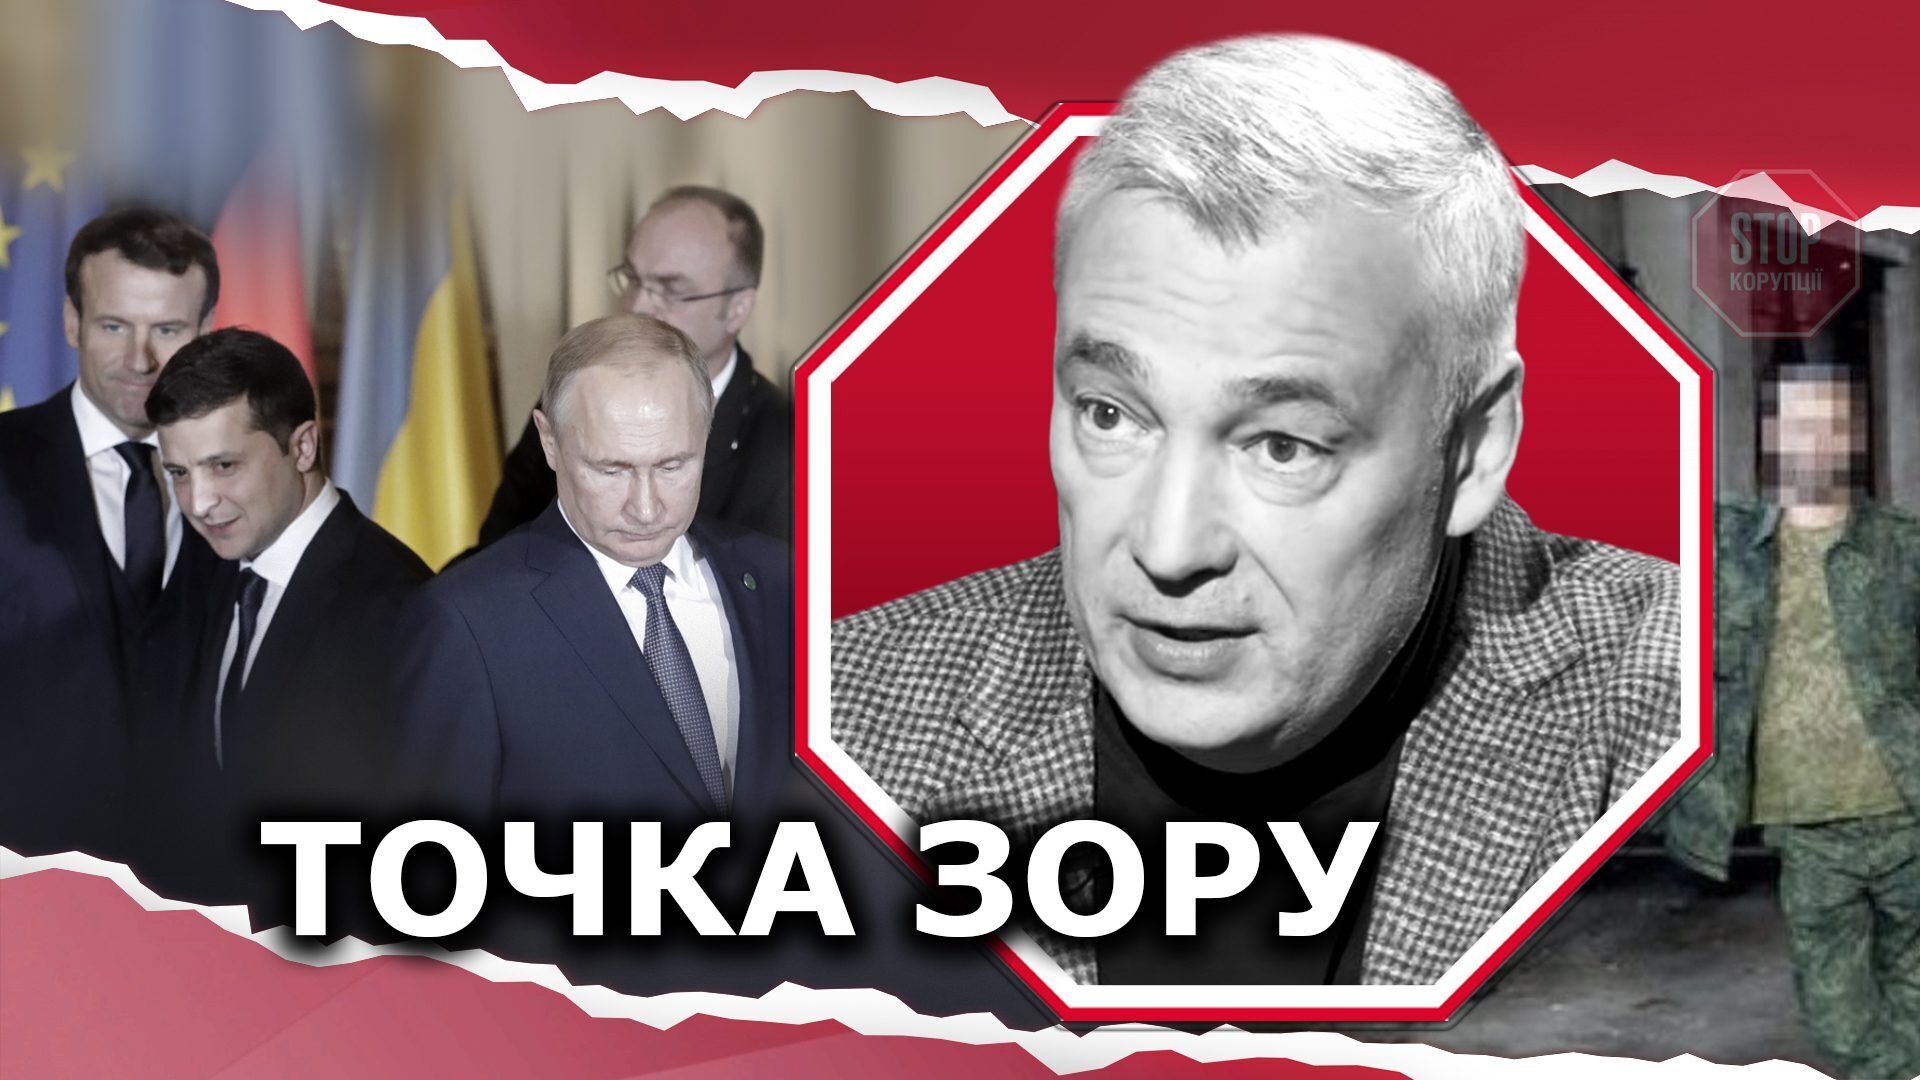  Арешт Косяка матиме негативний вплив на перемовини щодо Донбасу Ілюстрація: СтопКор